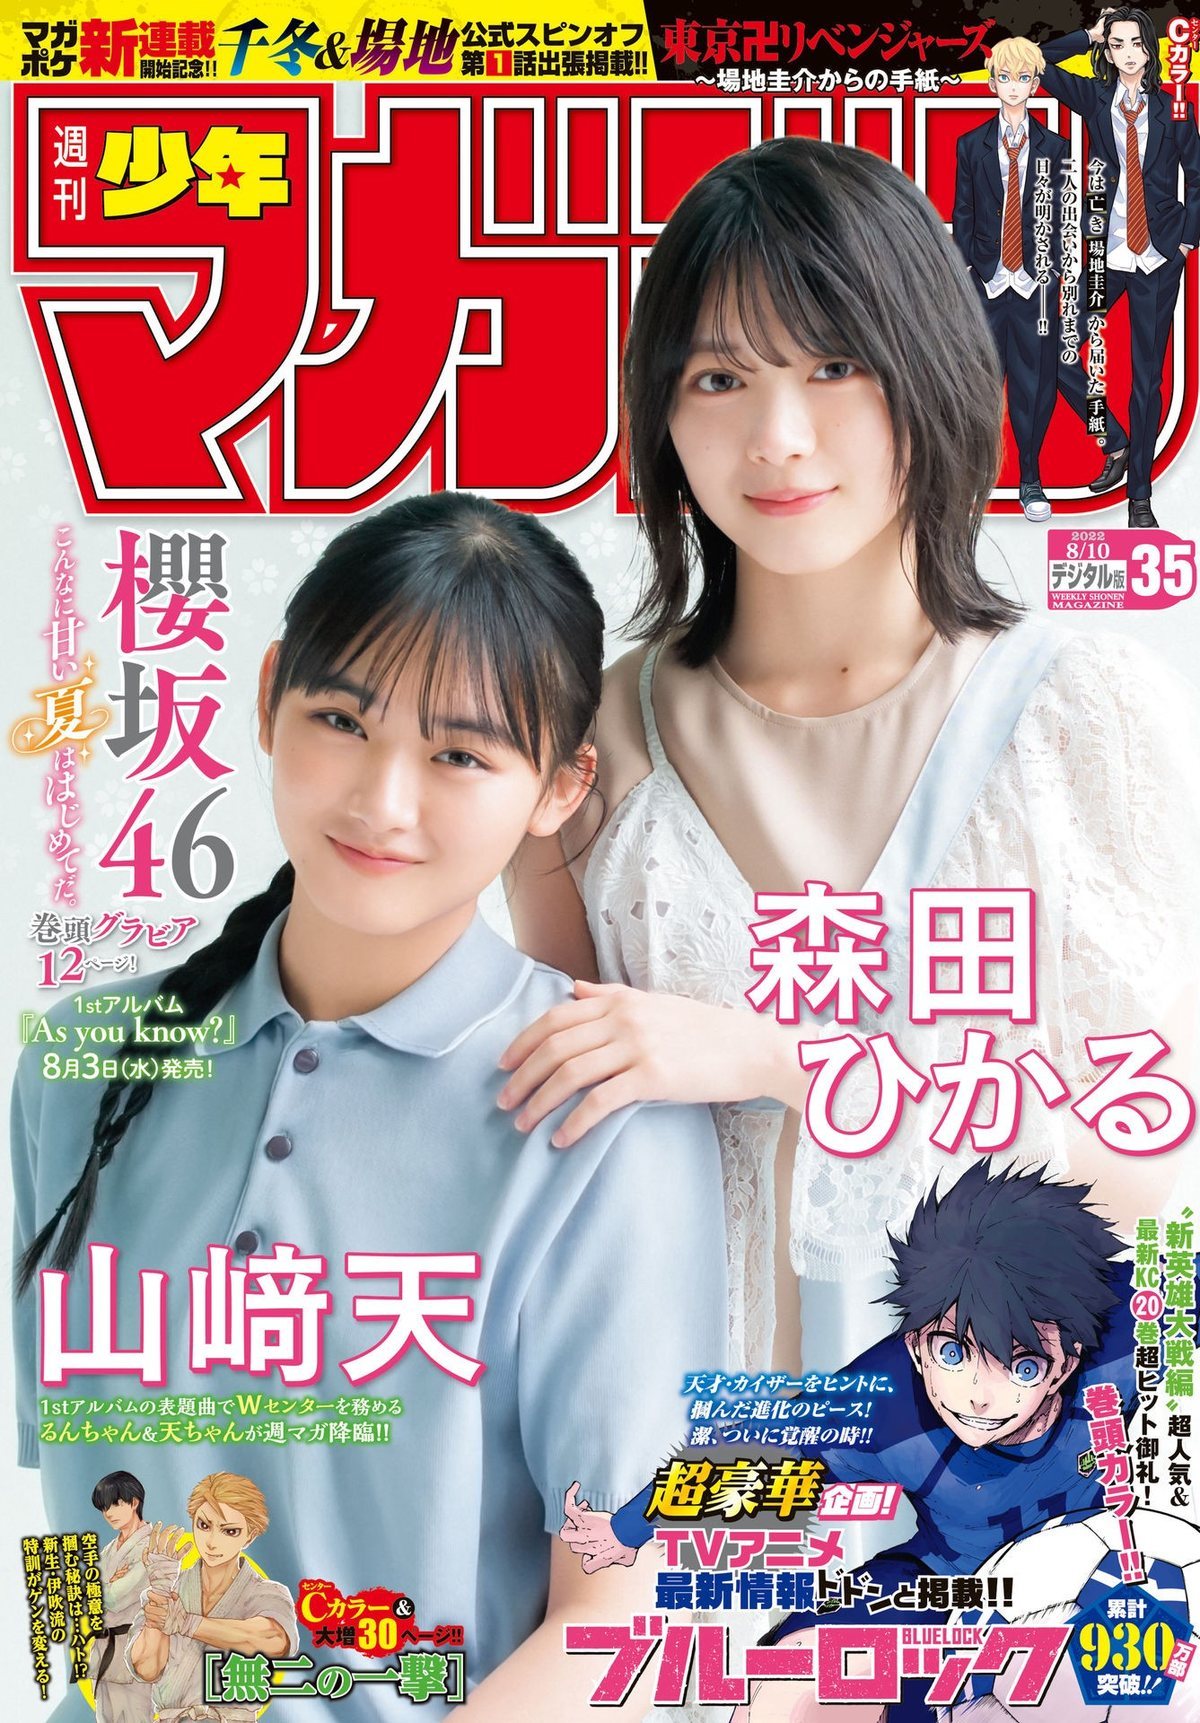 森田ひかる 山﨑天, Shonen Magazine 2022 No.35 (週刊少年マガジン 2022年35号) - itotii